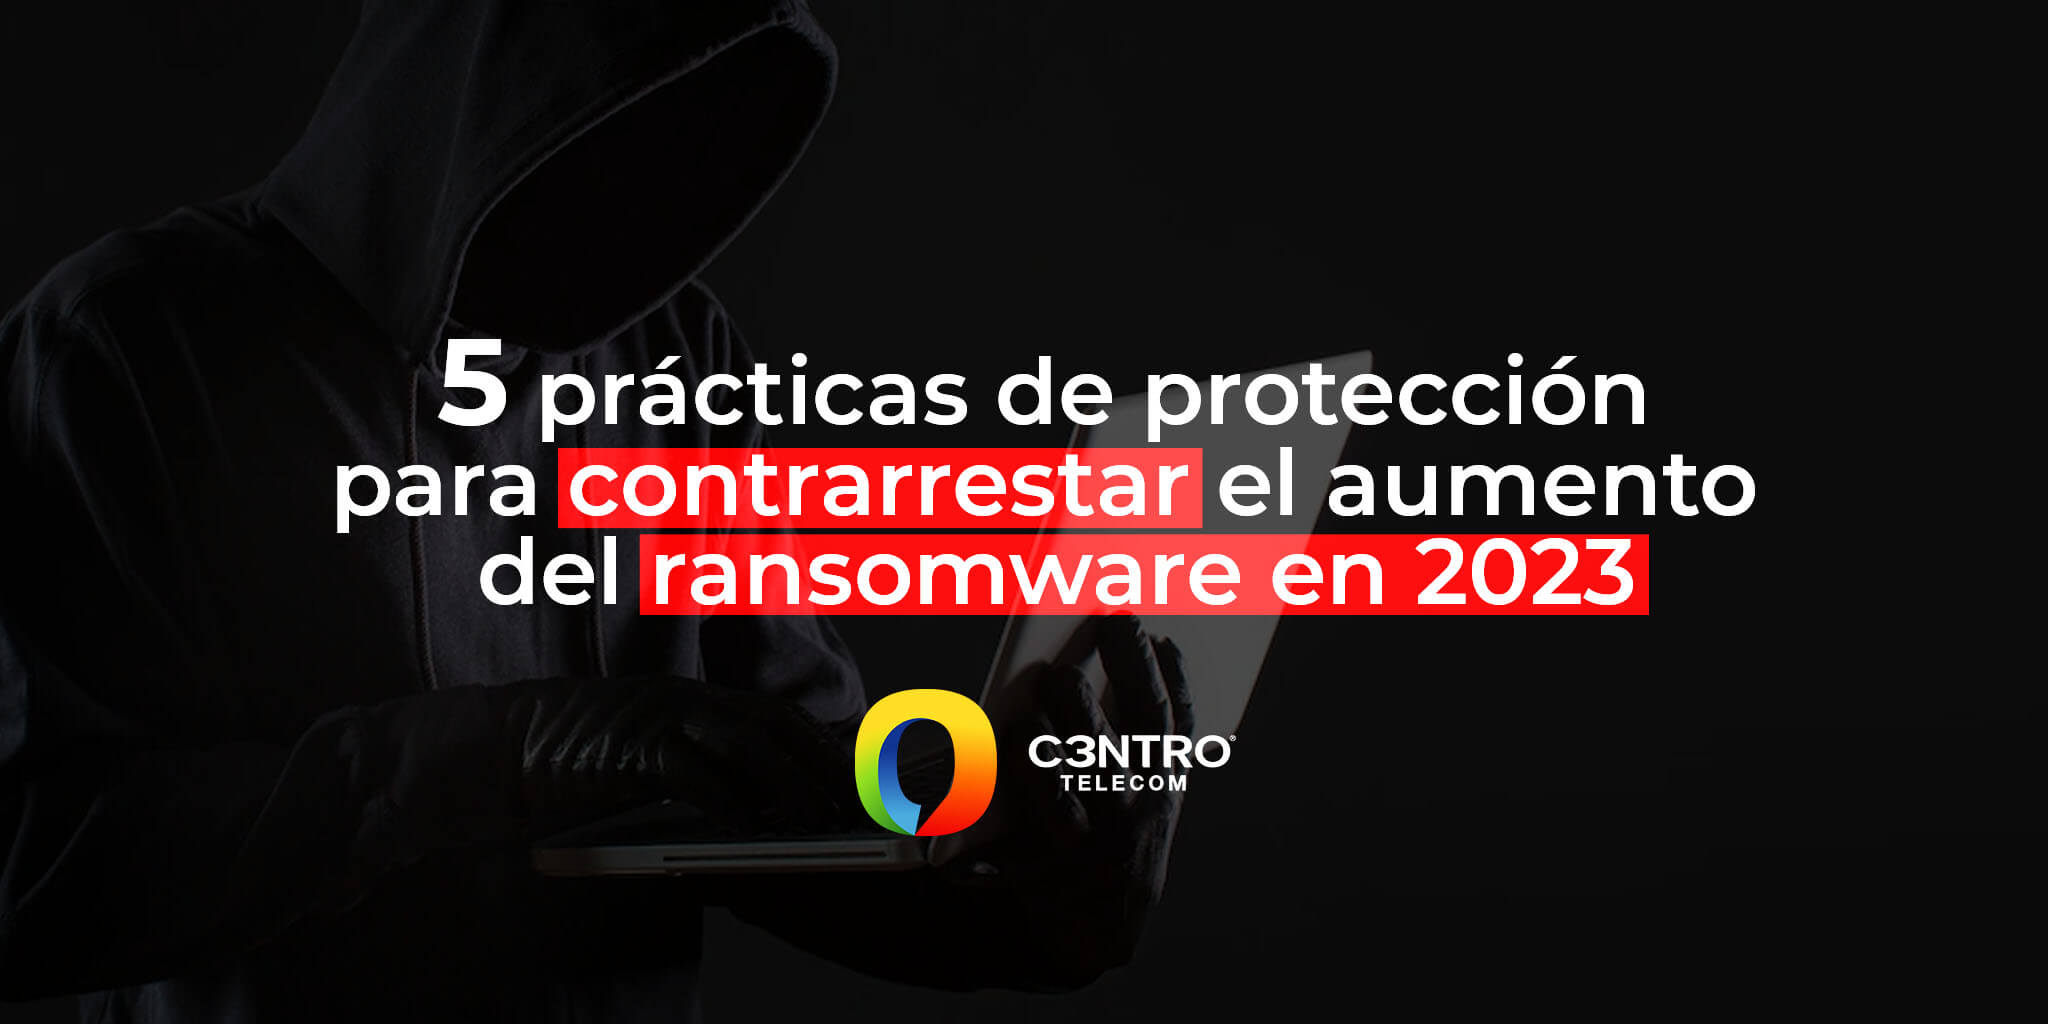 5 prácticas de protección para contrarrestar el aumento del ransomware en 2023